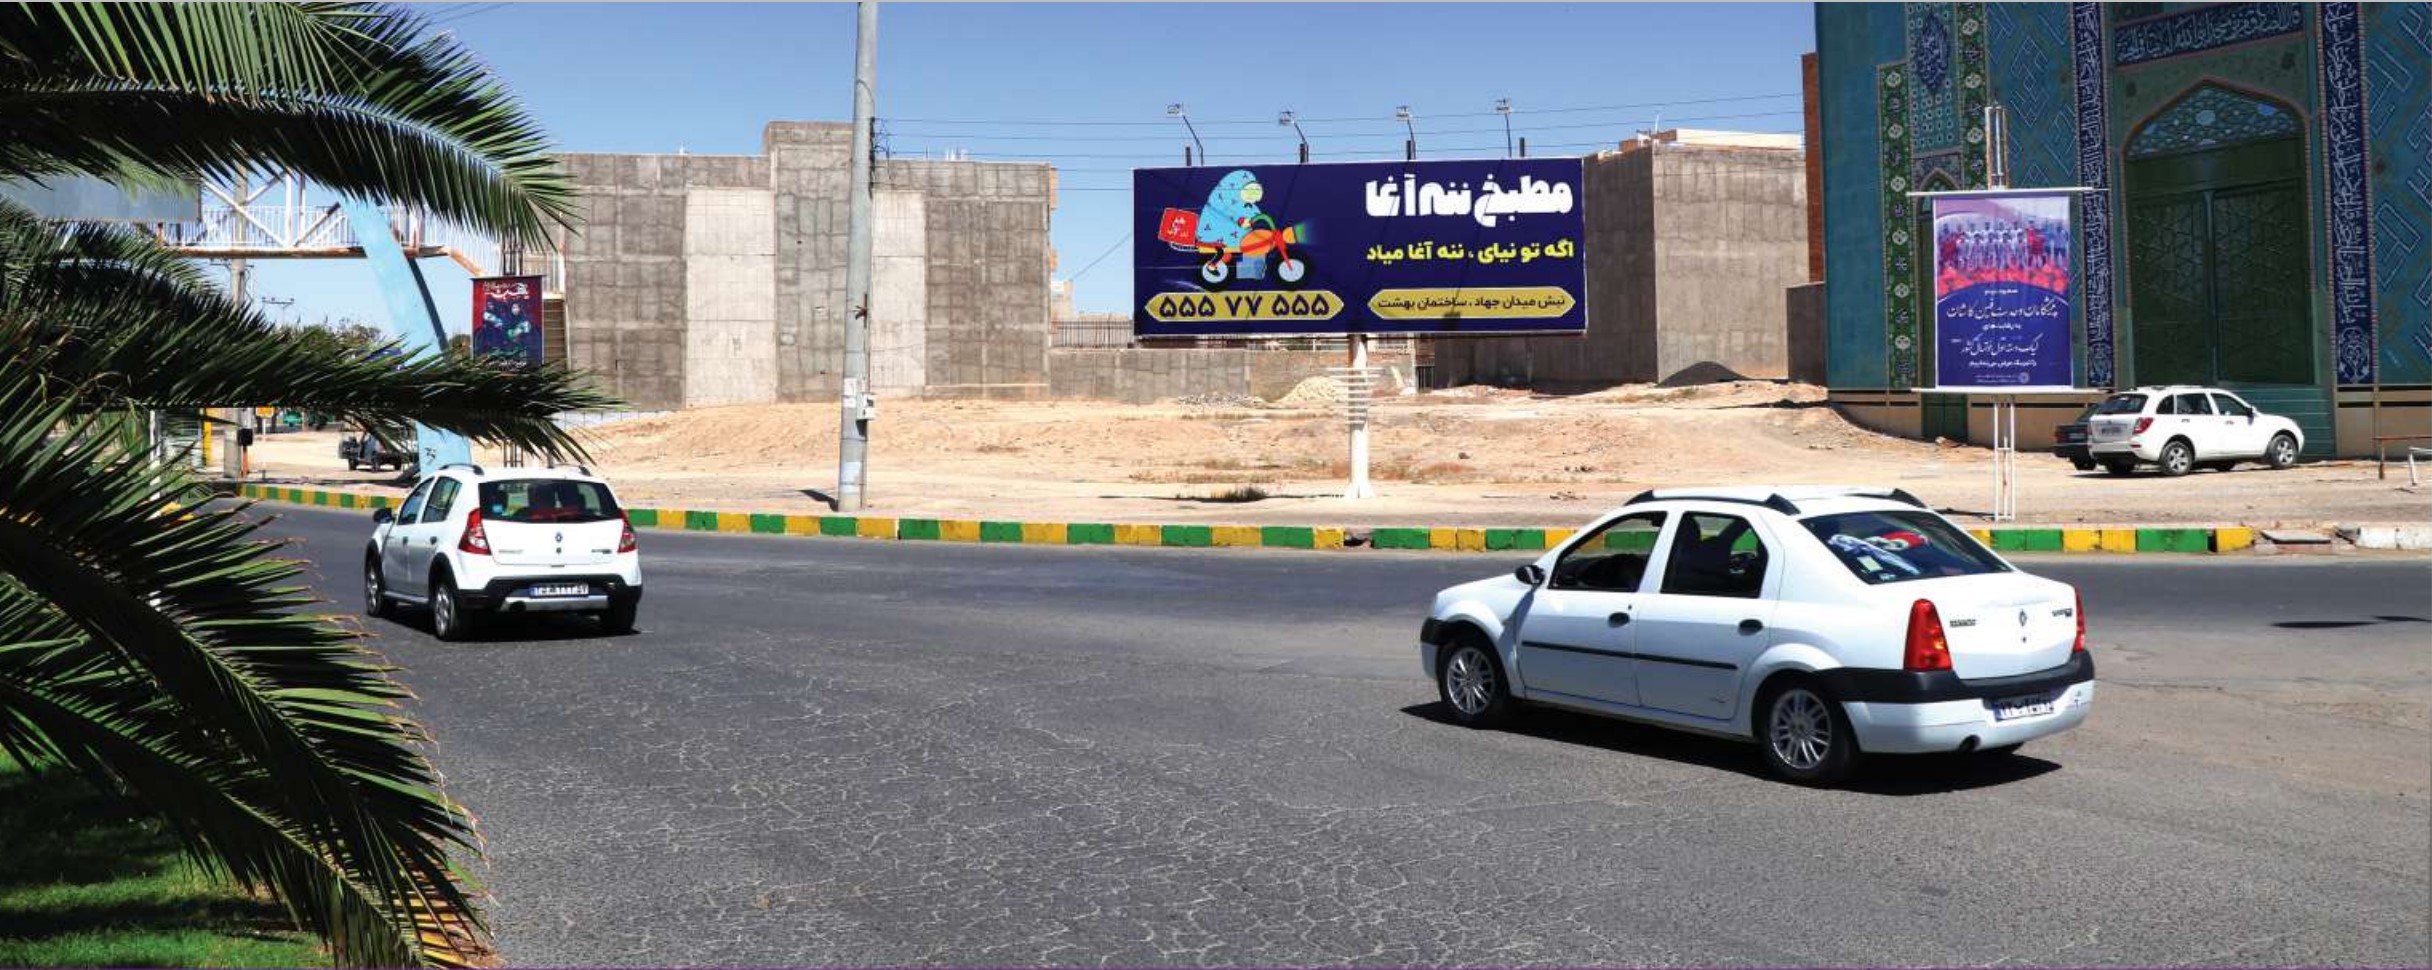 بیلبورد میدان شهید اردهال